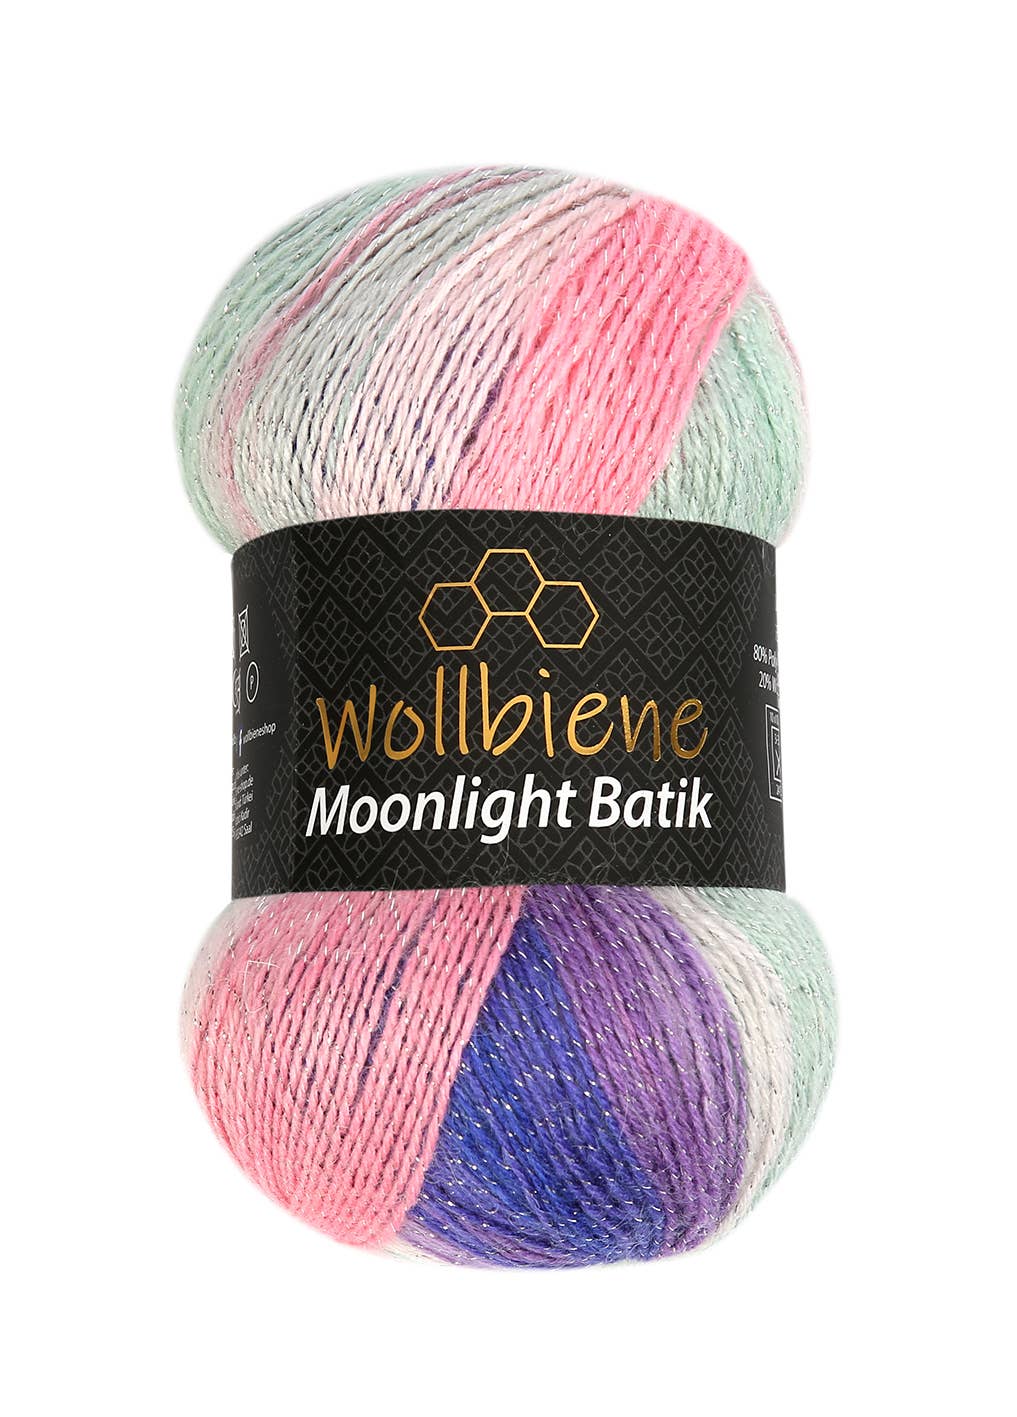 woolen bee moonlight glitter batik crochet knitting wool: 5000 black grey white